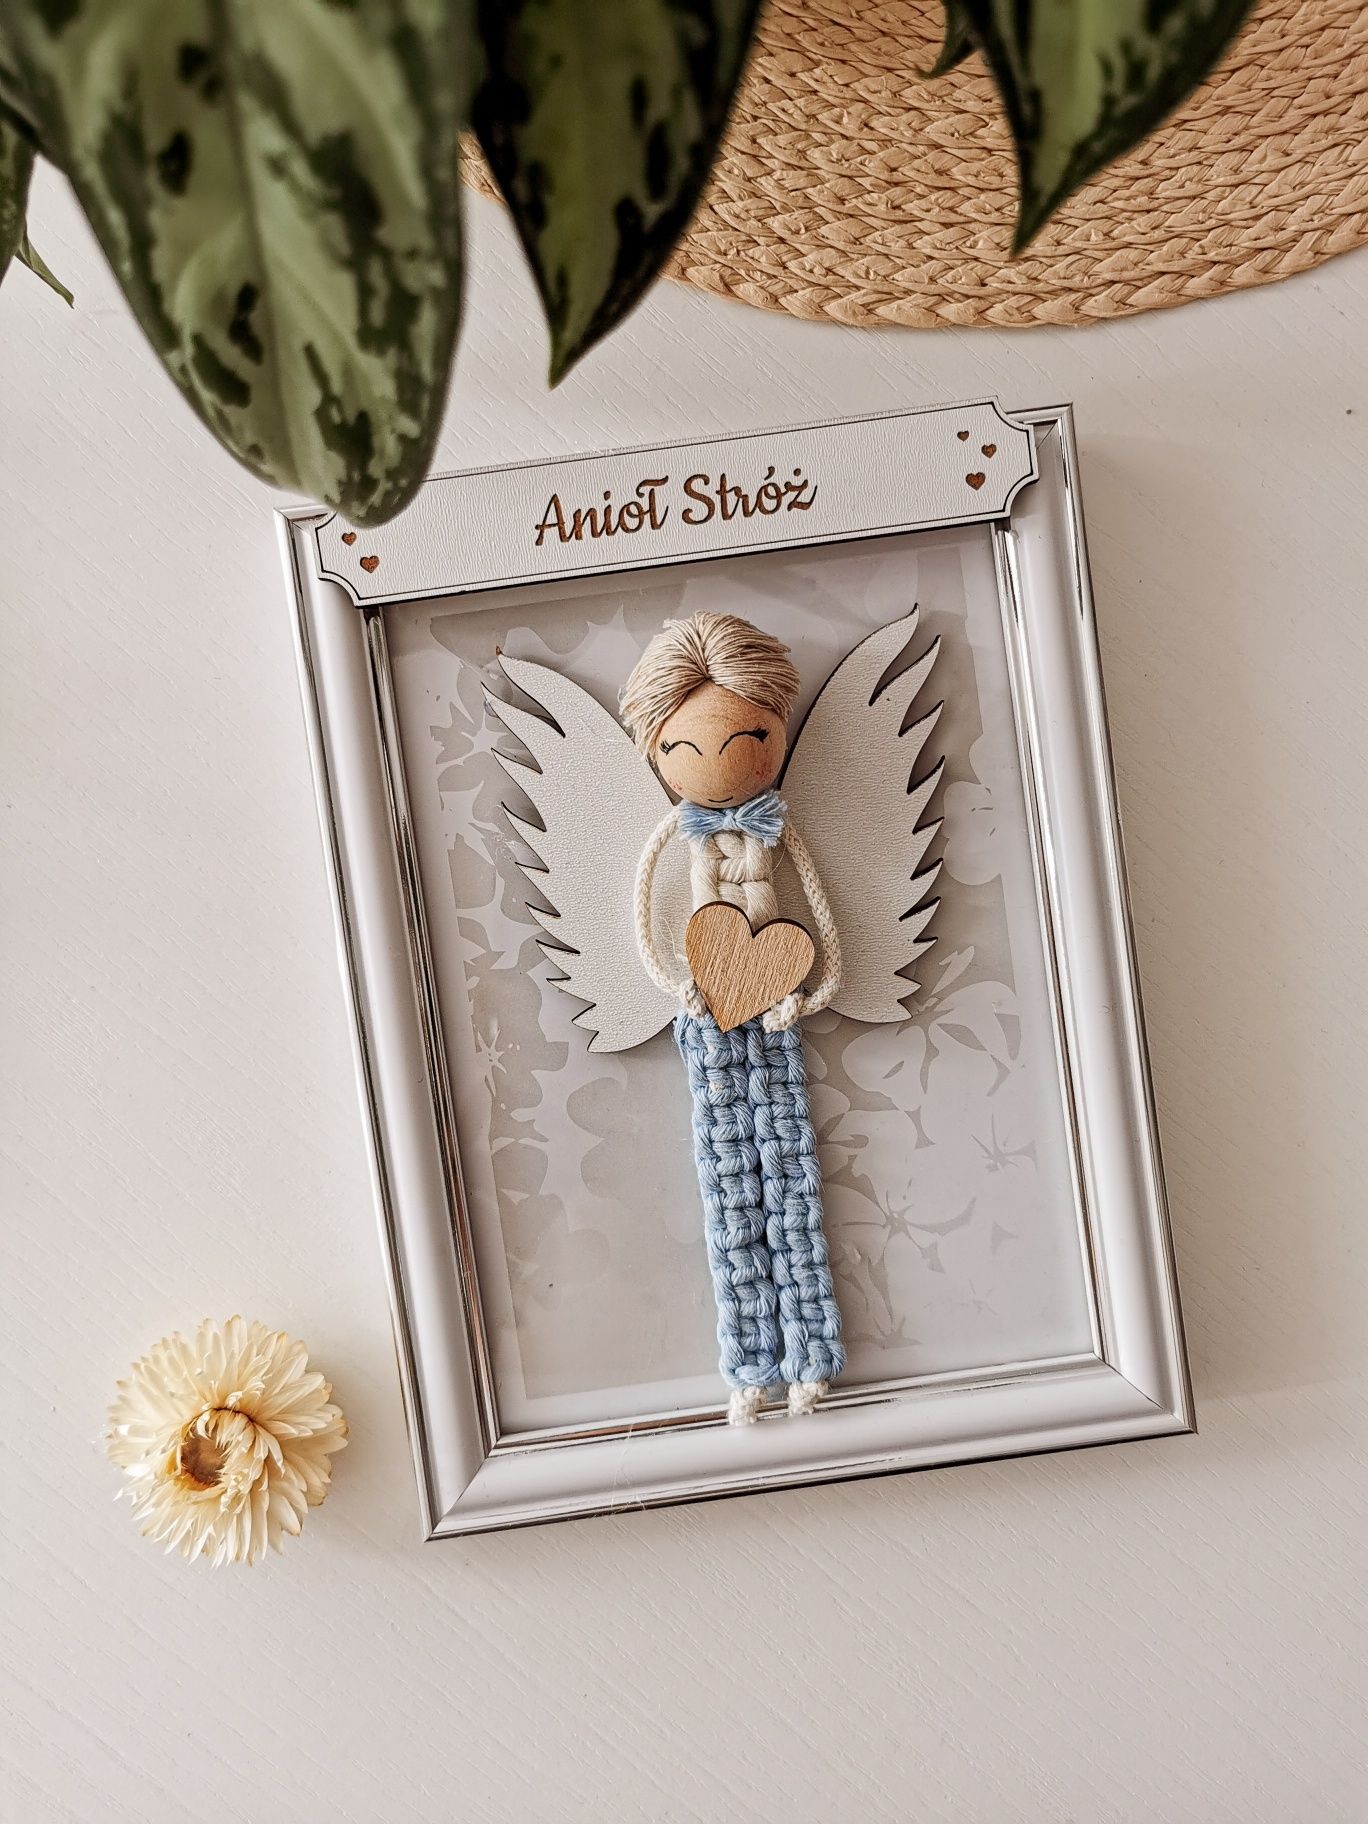 Anioł w ramce chłopiec makrama Chrzest Komunia, Bierzmowanie, prezent